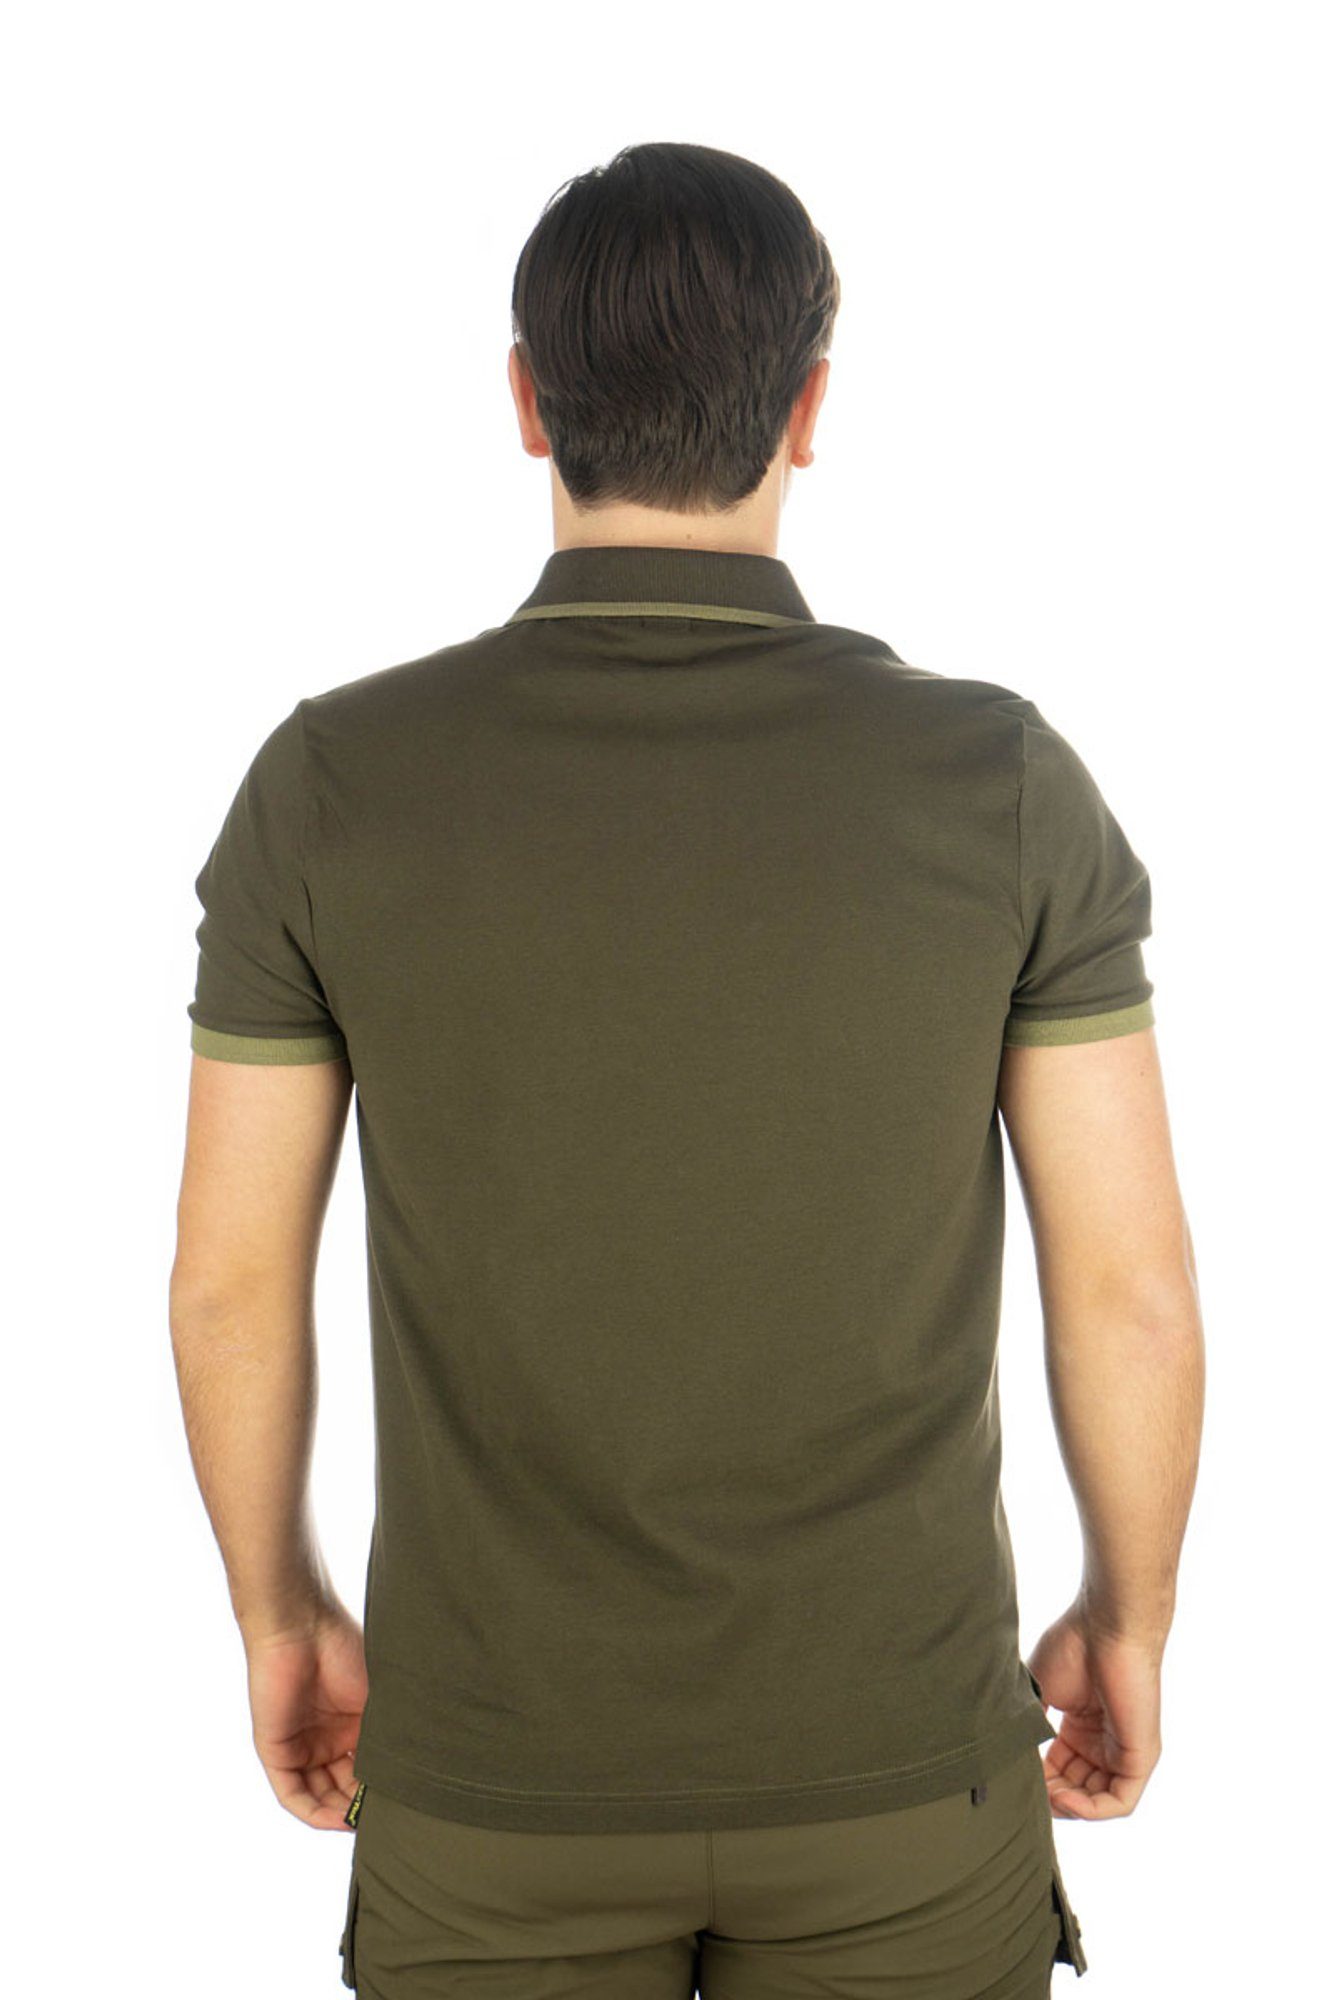 der Kurzarm Brusttasche mit Wildsau-Stickerei OS-Trachten Sonky auf Jagdshirt Poloshirt oliv